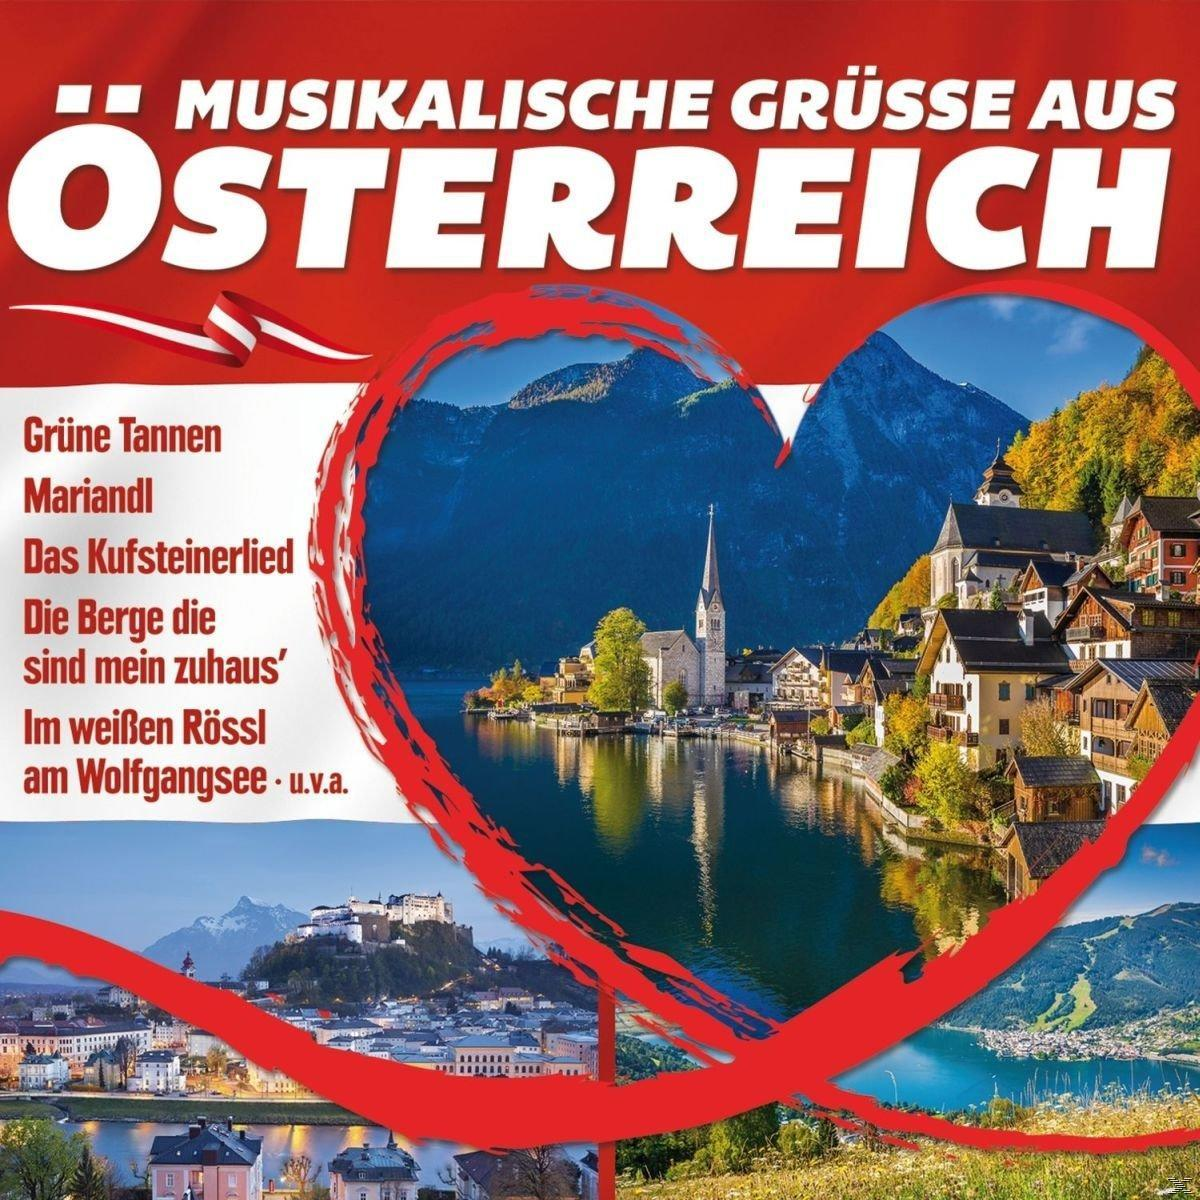 VARIOUS - Musikalische Grüße aus Österre - (CD)